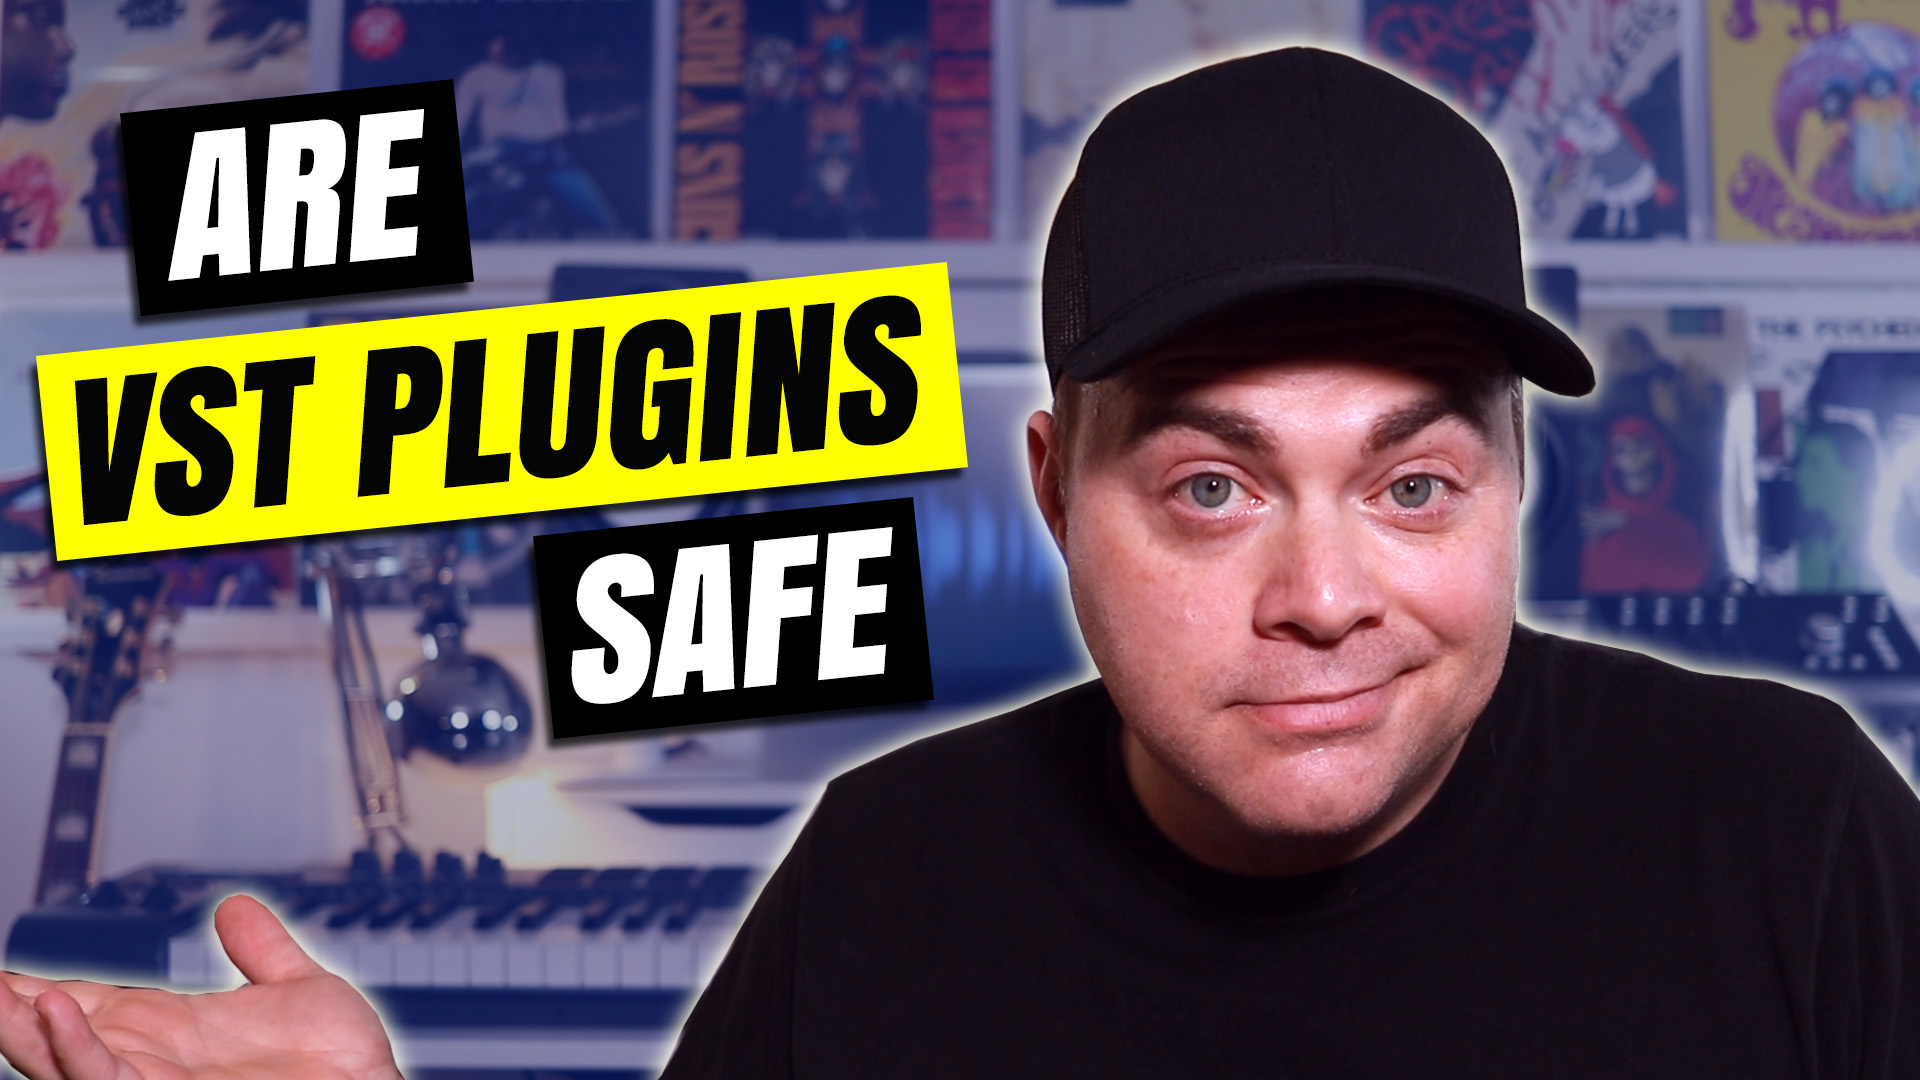 Are VST Plugins Safe? – Audio Tech TV